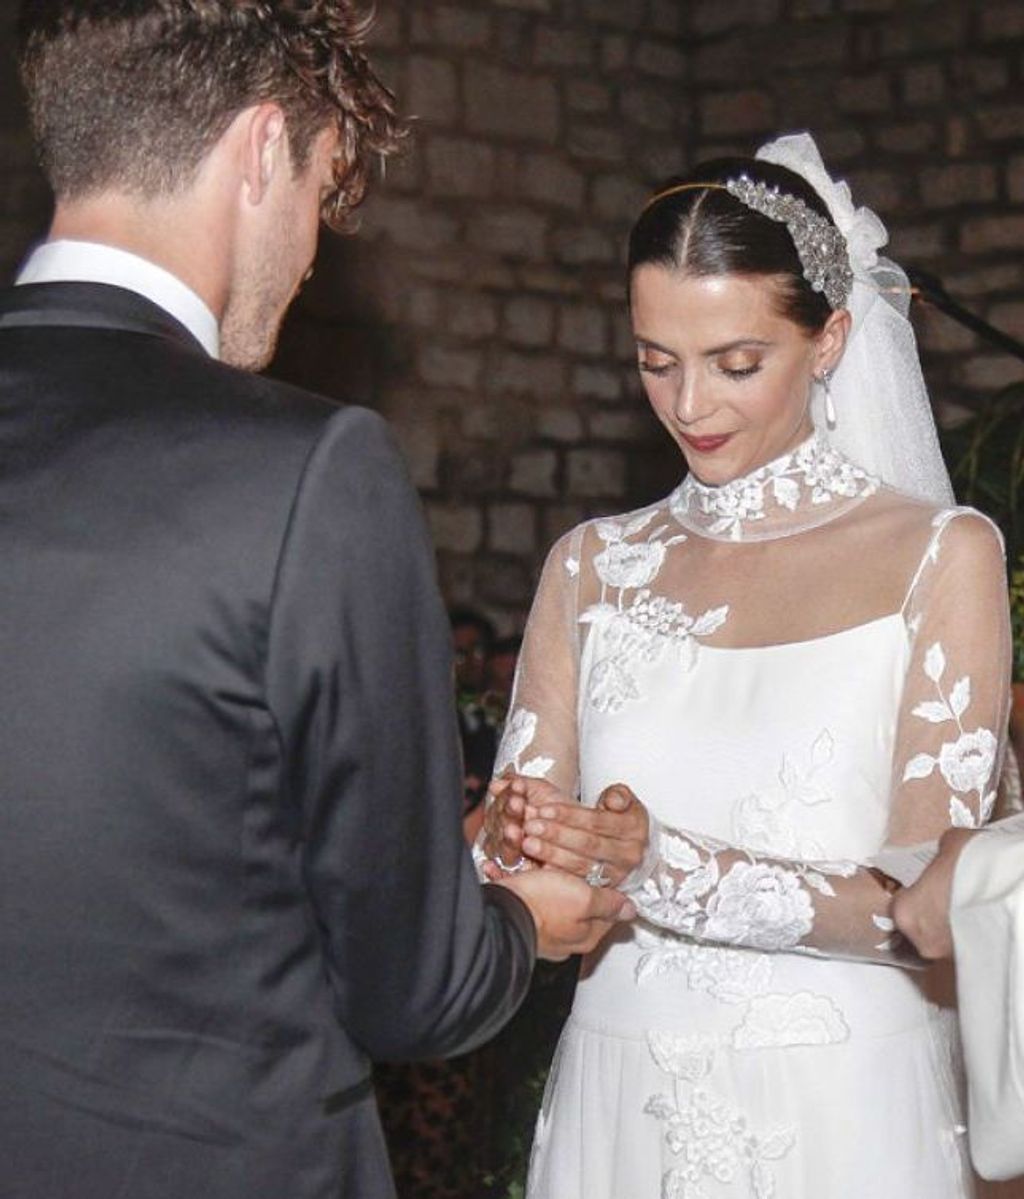 La boda de Macarena Gómez y Aldo Comas. FUENTE: Instagram